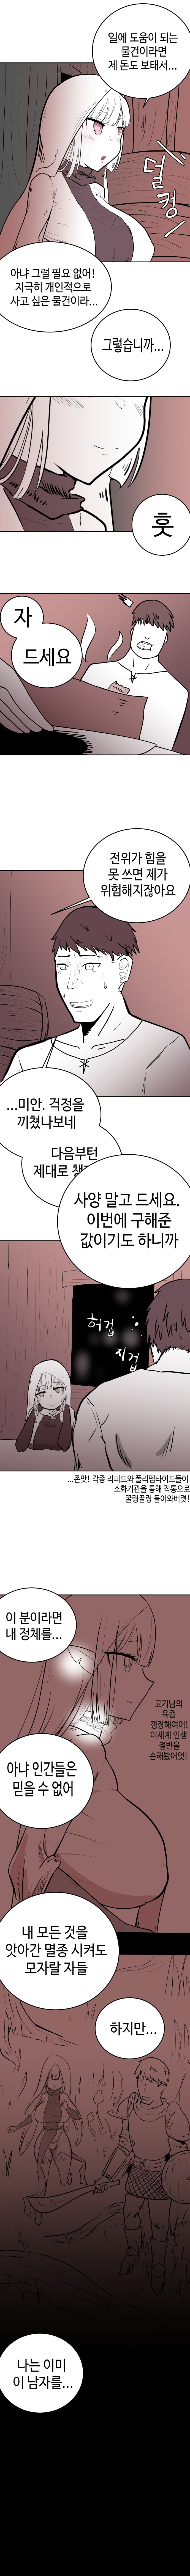 엘프노예 구입하는 만화.manhwa